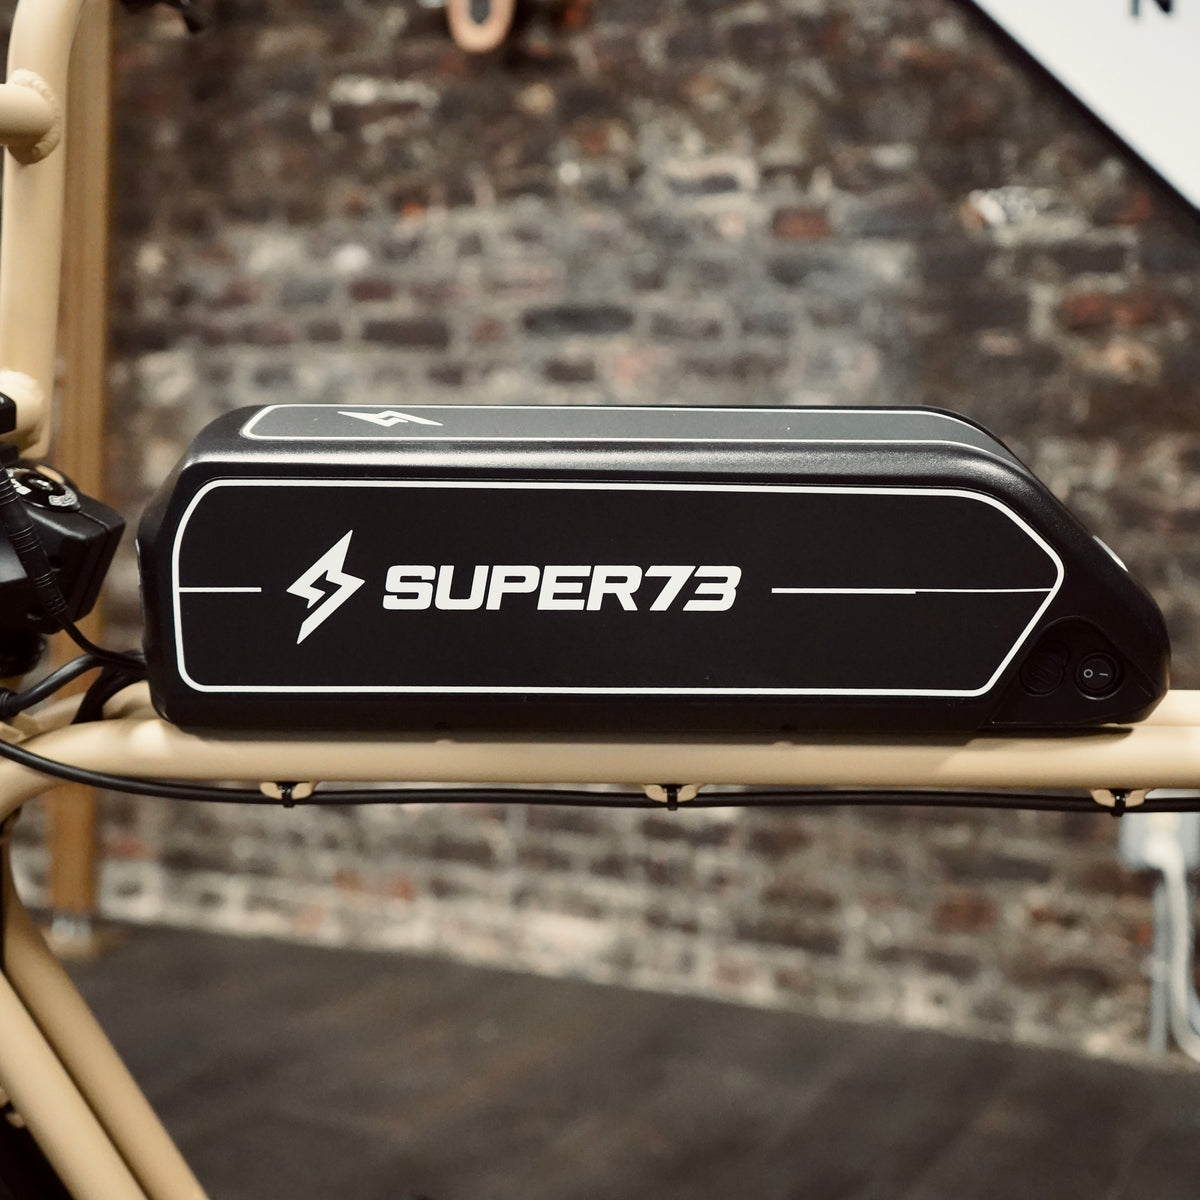 S1 - Super73 Electric Bike